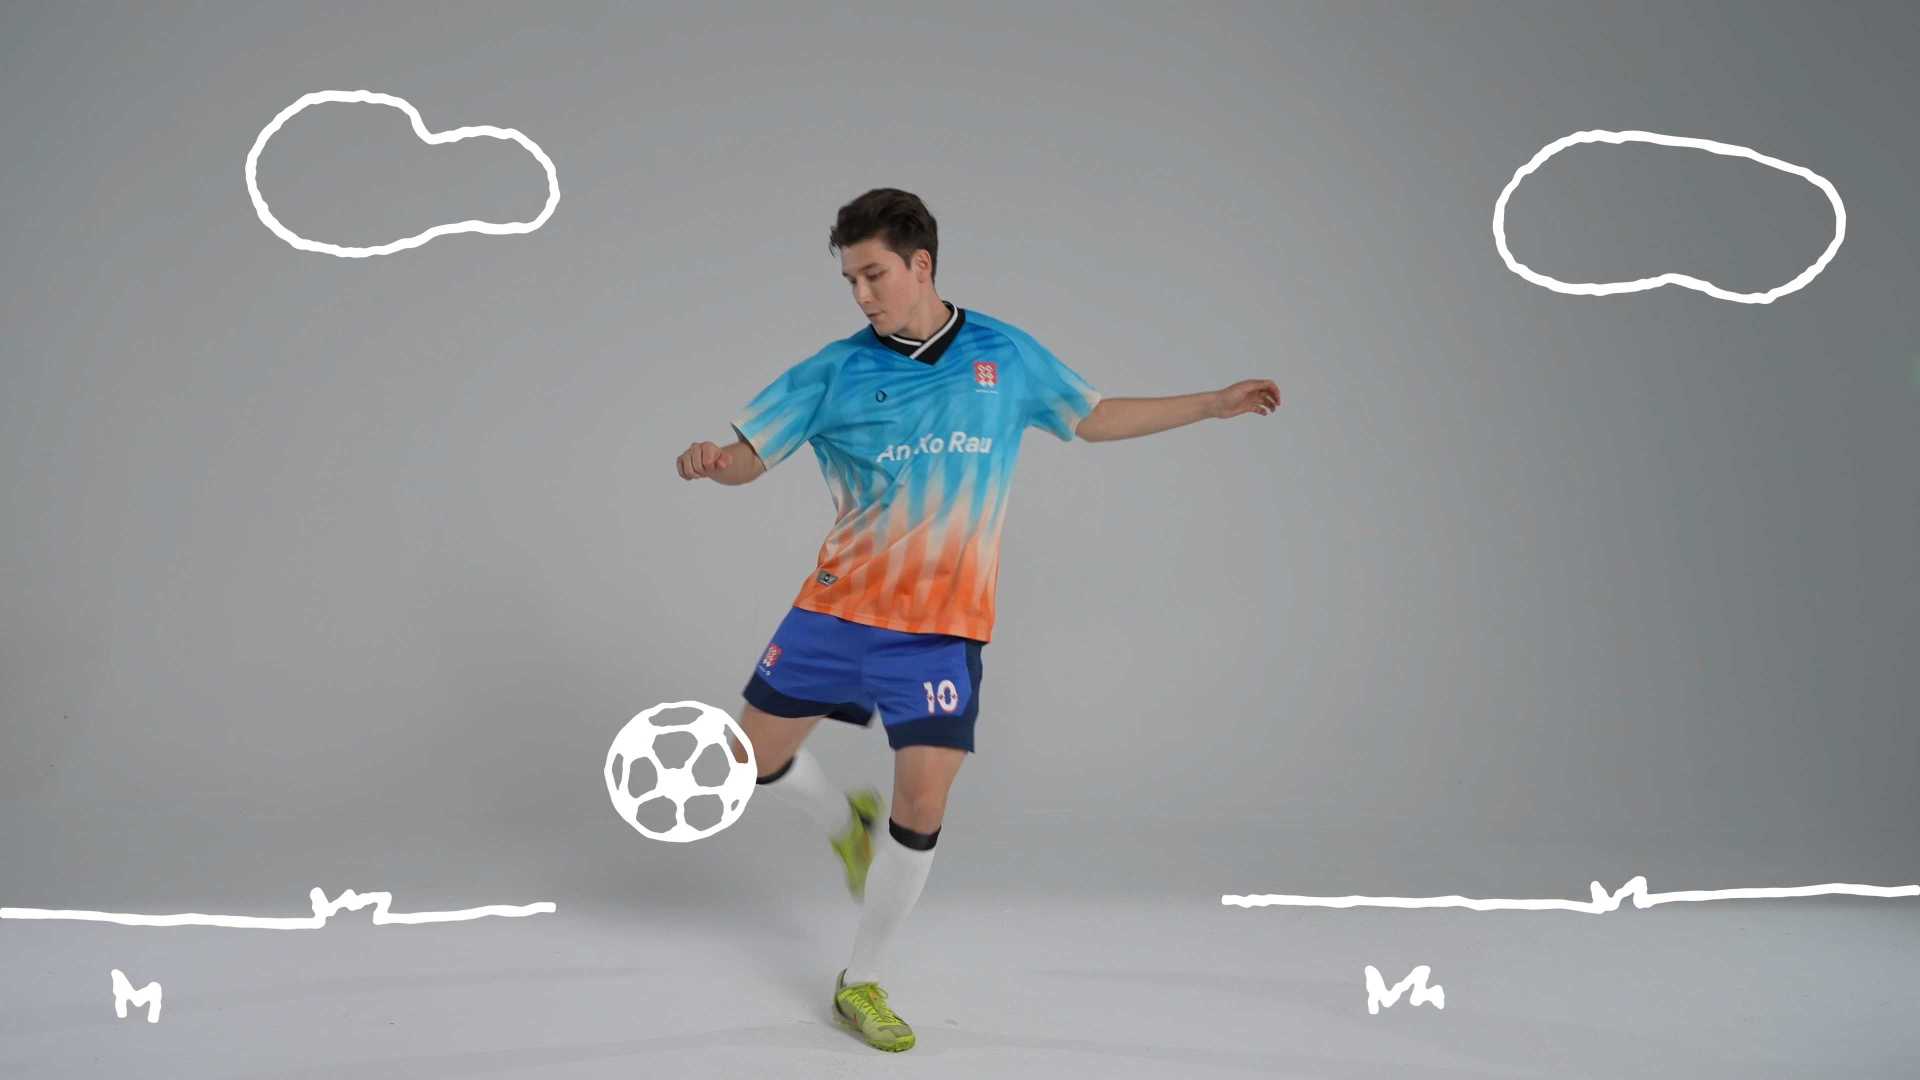 安高若足球系列-创意短视频